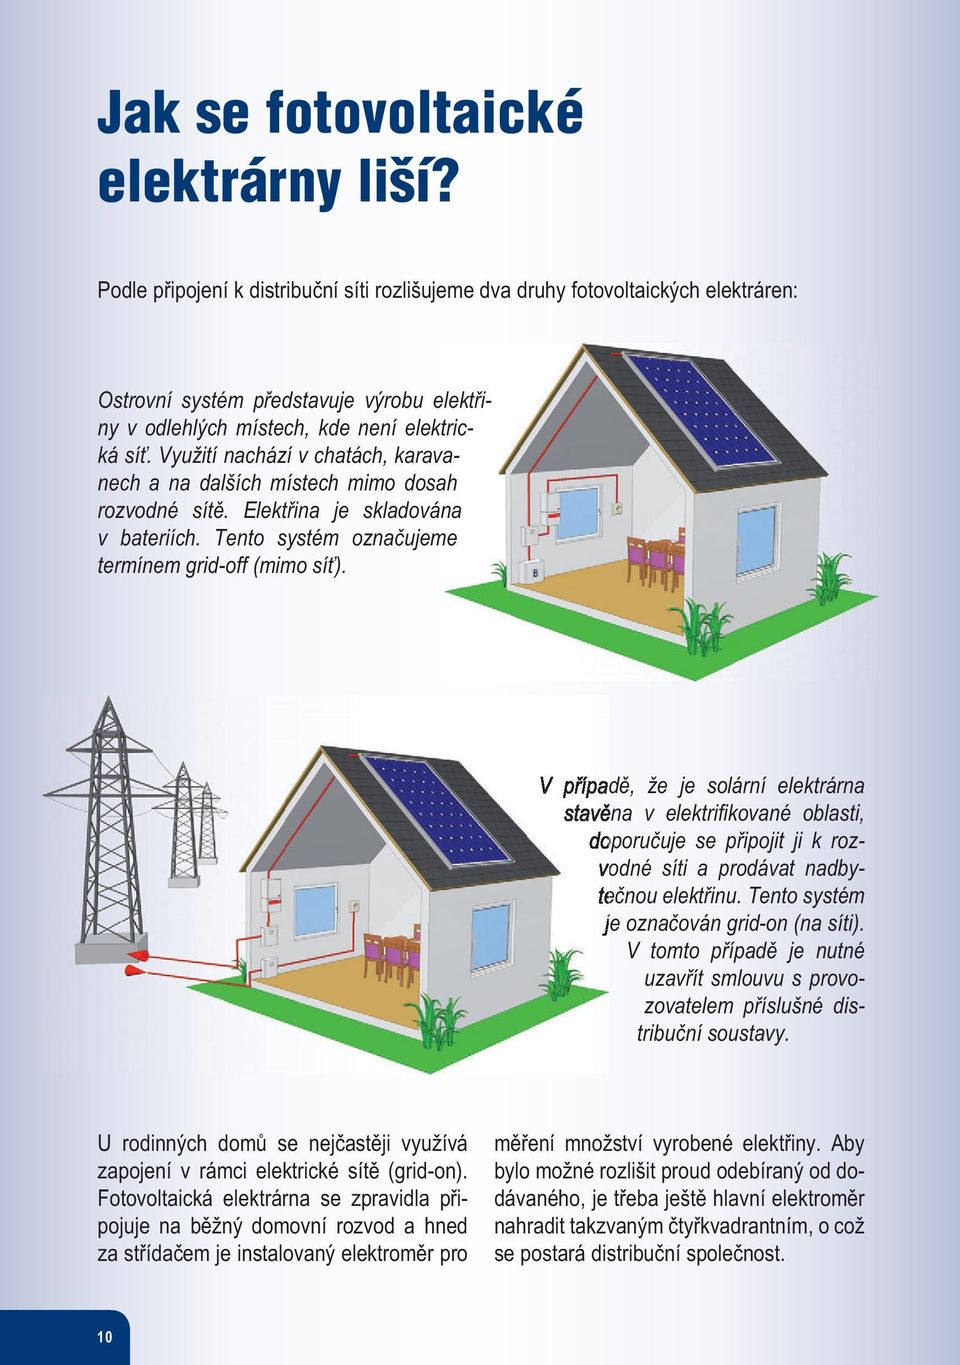 Využití nachází v chatách, karavanech a na dalších místech mimo dosah rozvodné sítě. Elektřina je skladována v bateriích. Tento systém označujeme termínem grid-off (mimo síť).